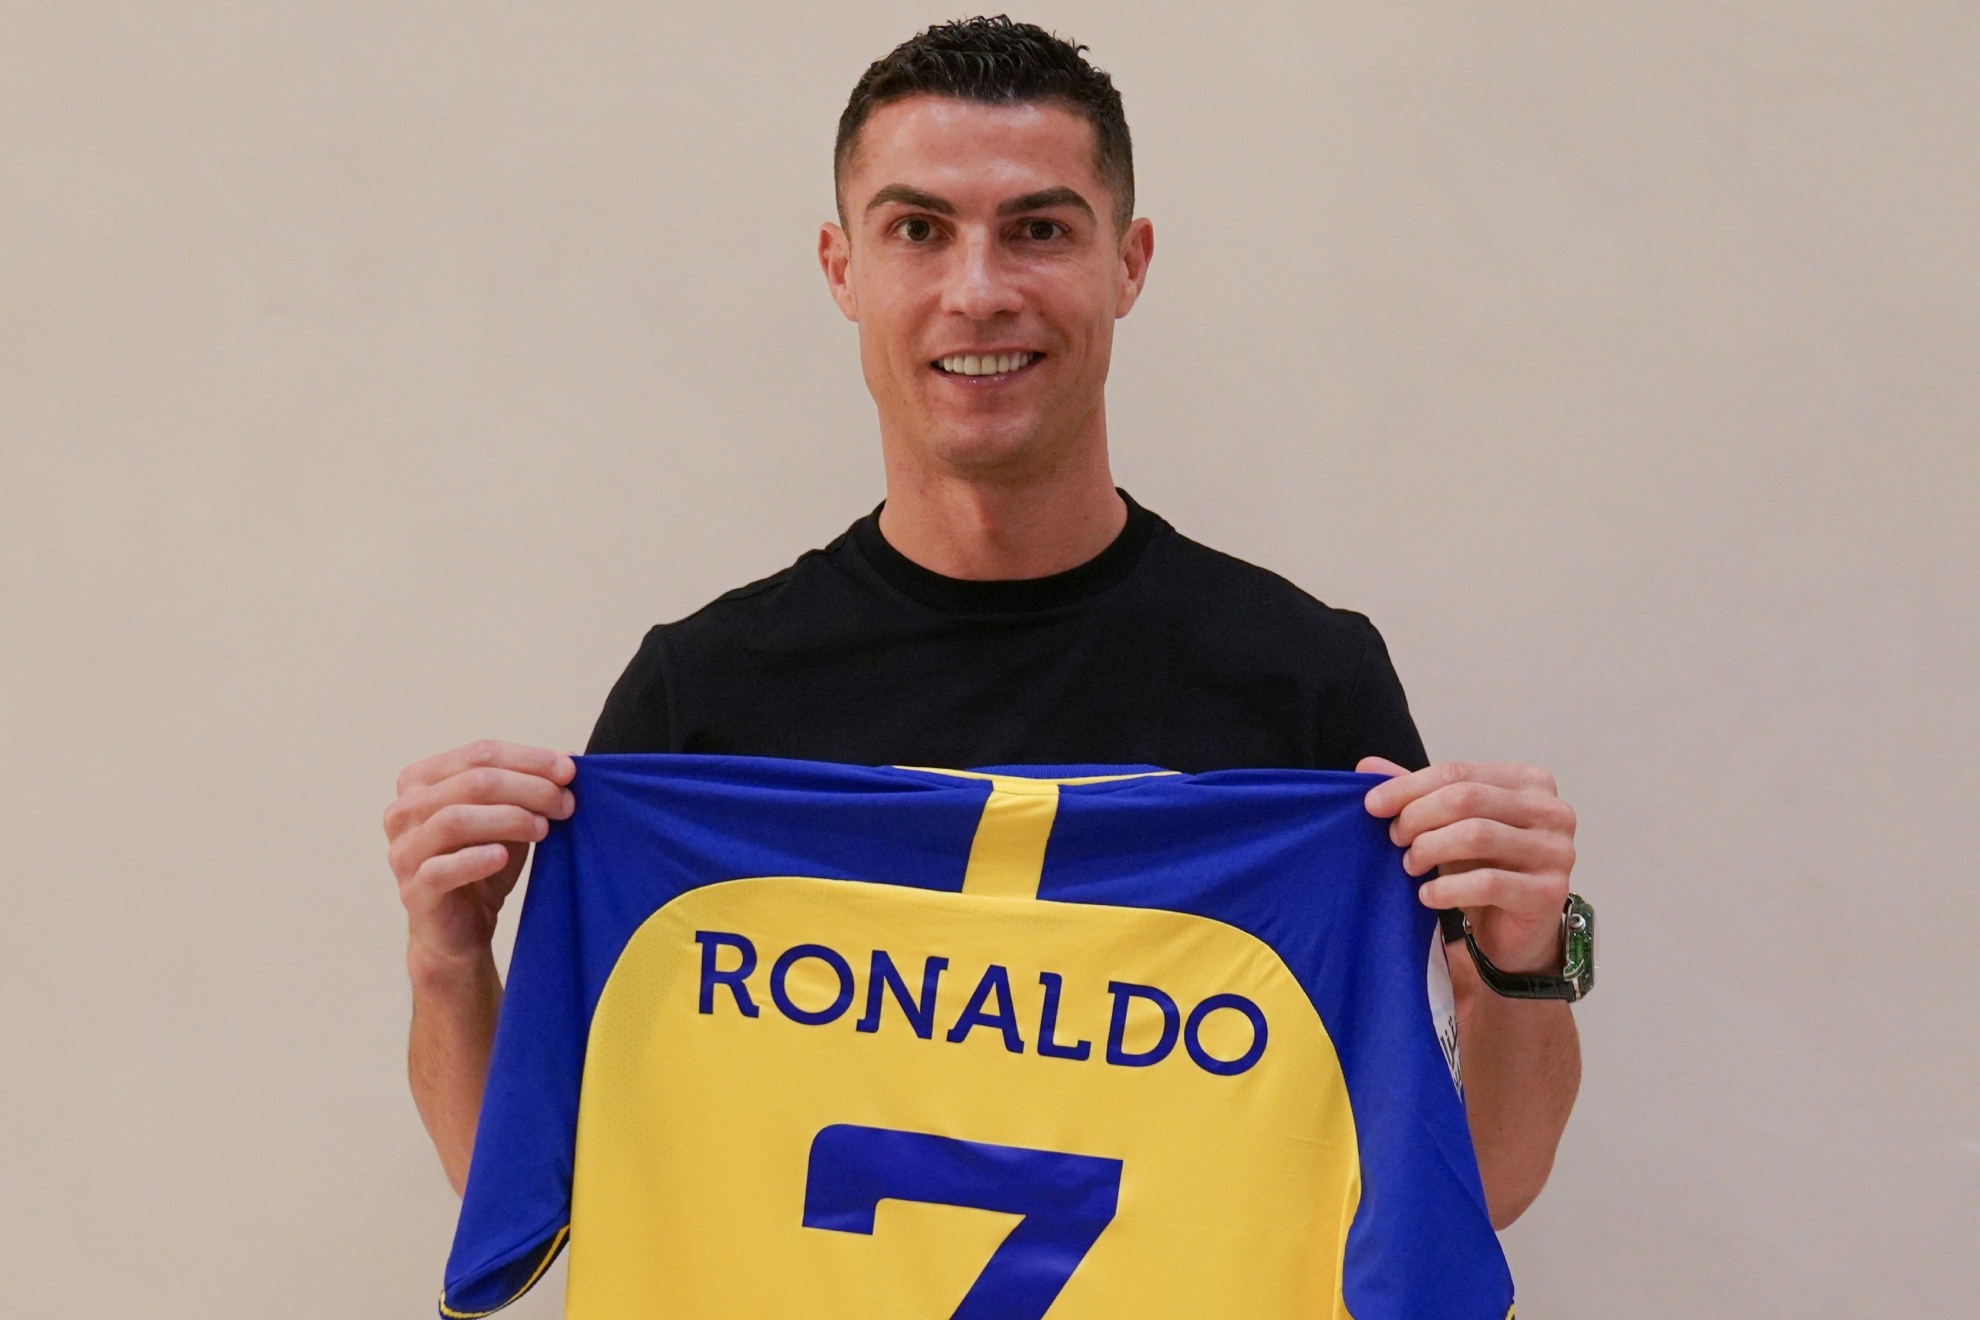 Ronaldo gia nhập CLB Xê Út: Sự kiện quan trọng của CLB Xê Út mang tên Ronaldo! Chinh phục ngôi vương Champions League không còn là chuyện đơn giản với đối thủ.